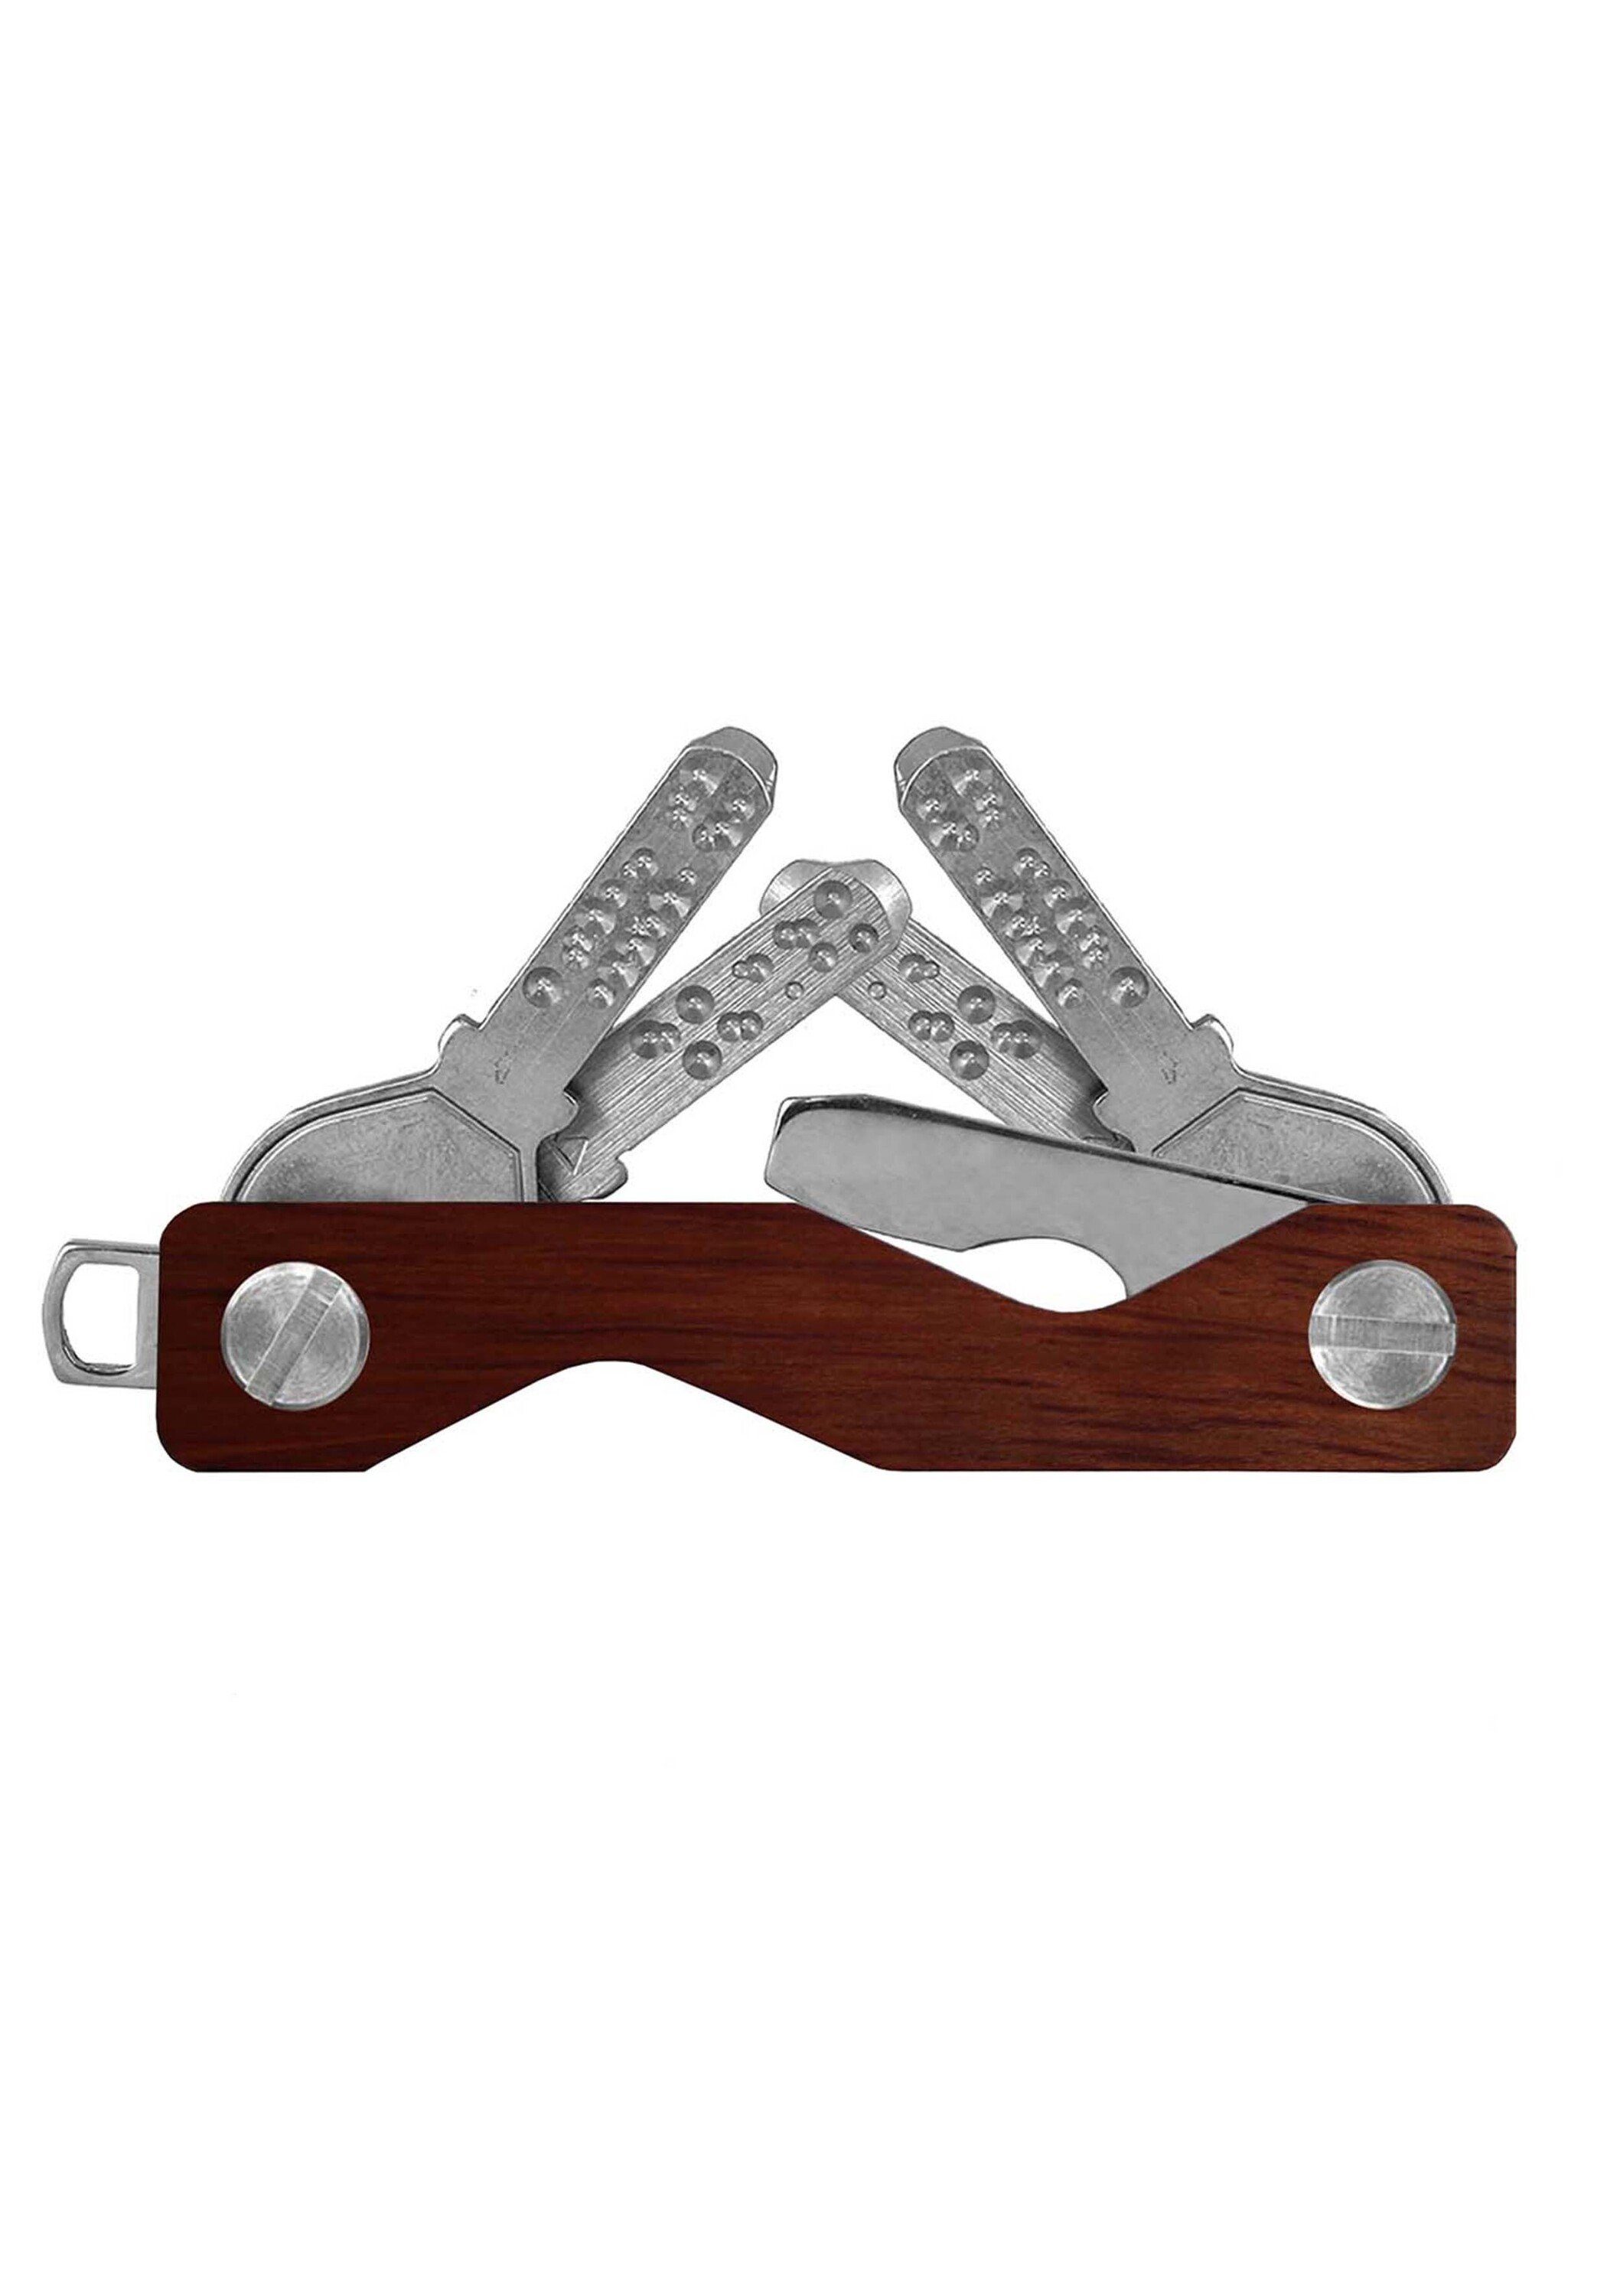 Schlüsselanhänger SWISS Wood dunkelbraun keycabins S3, made